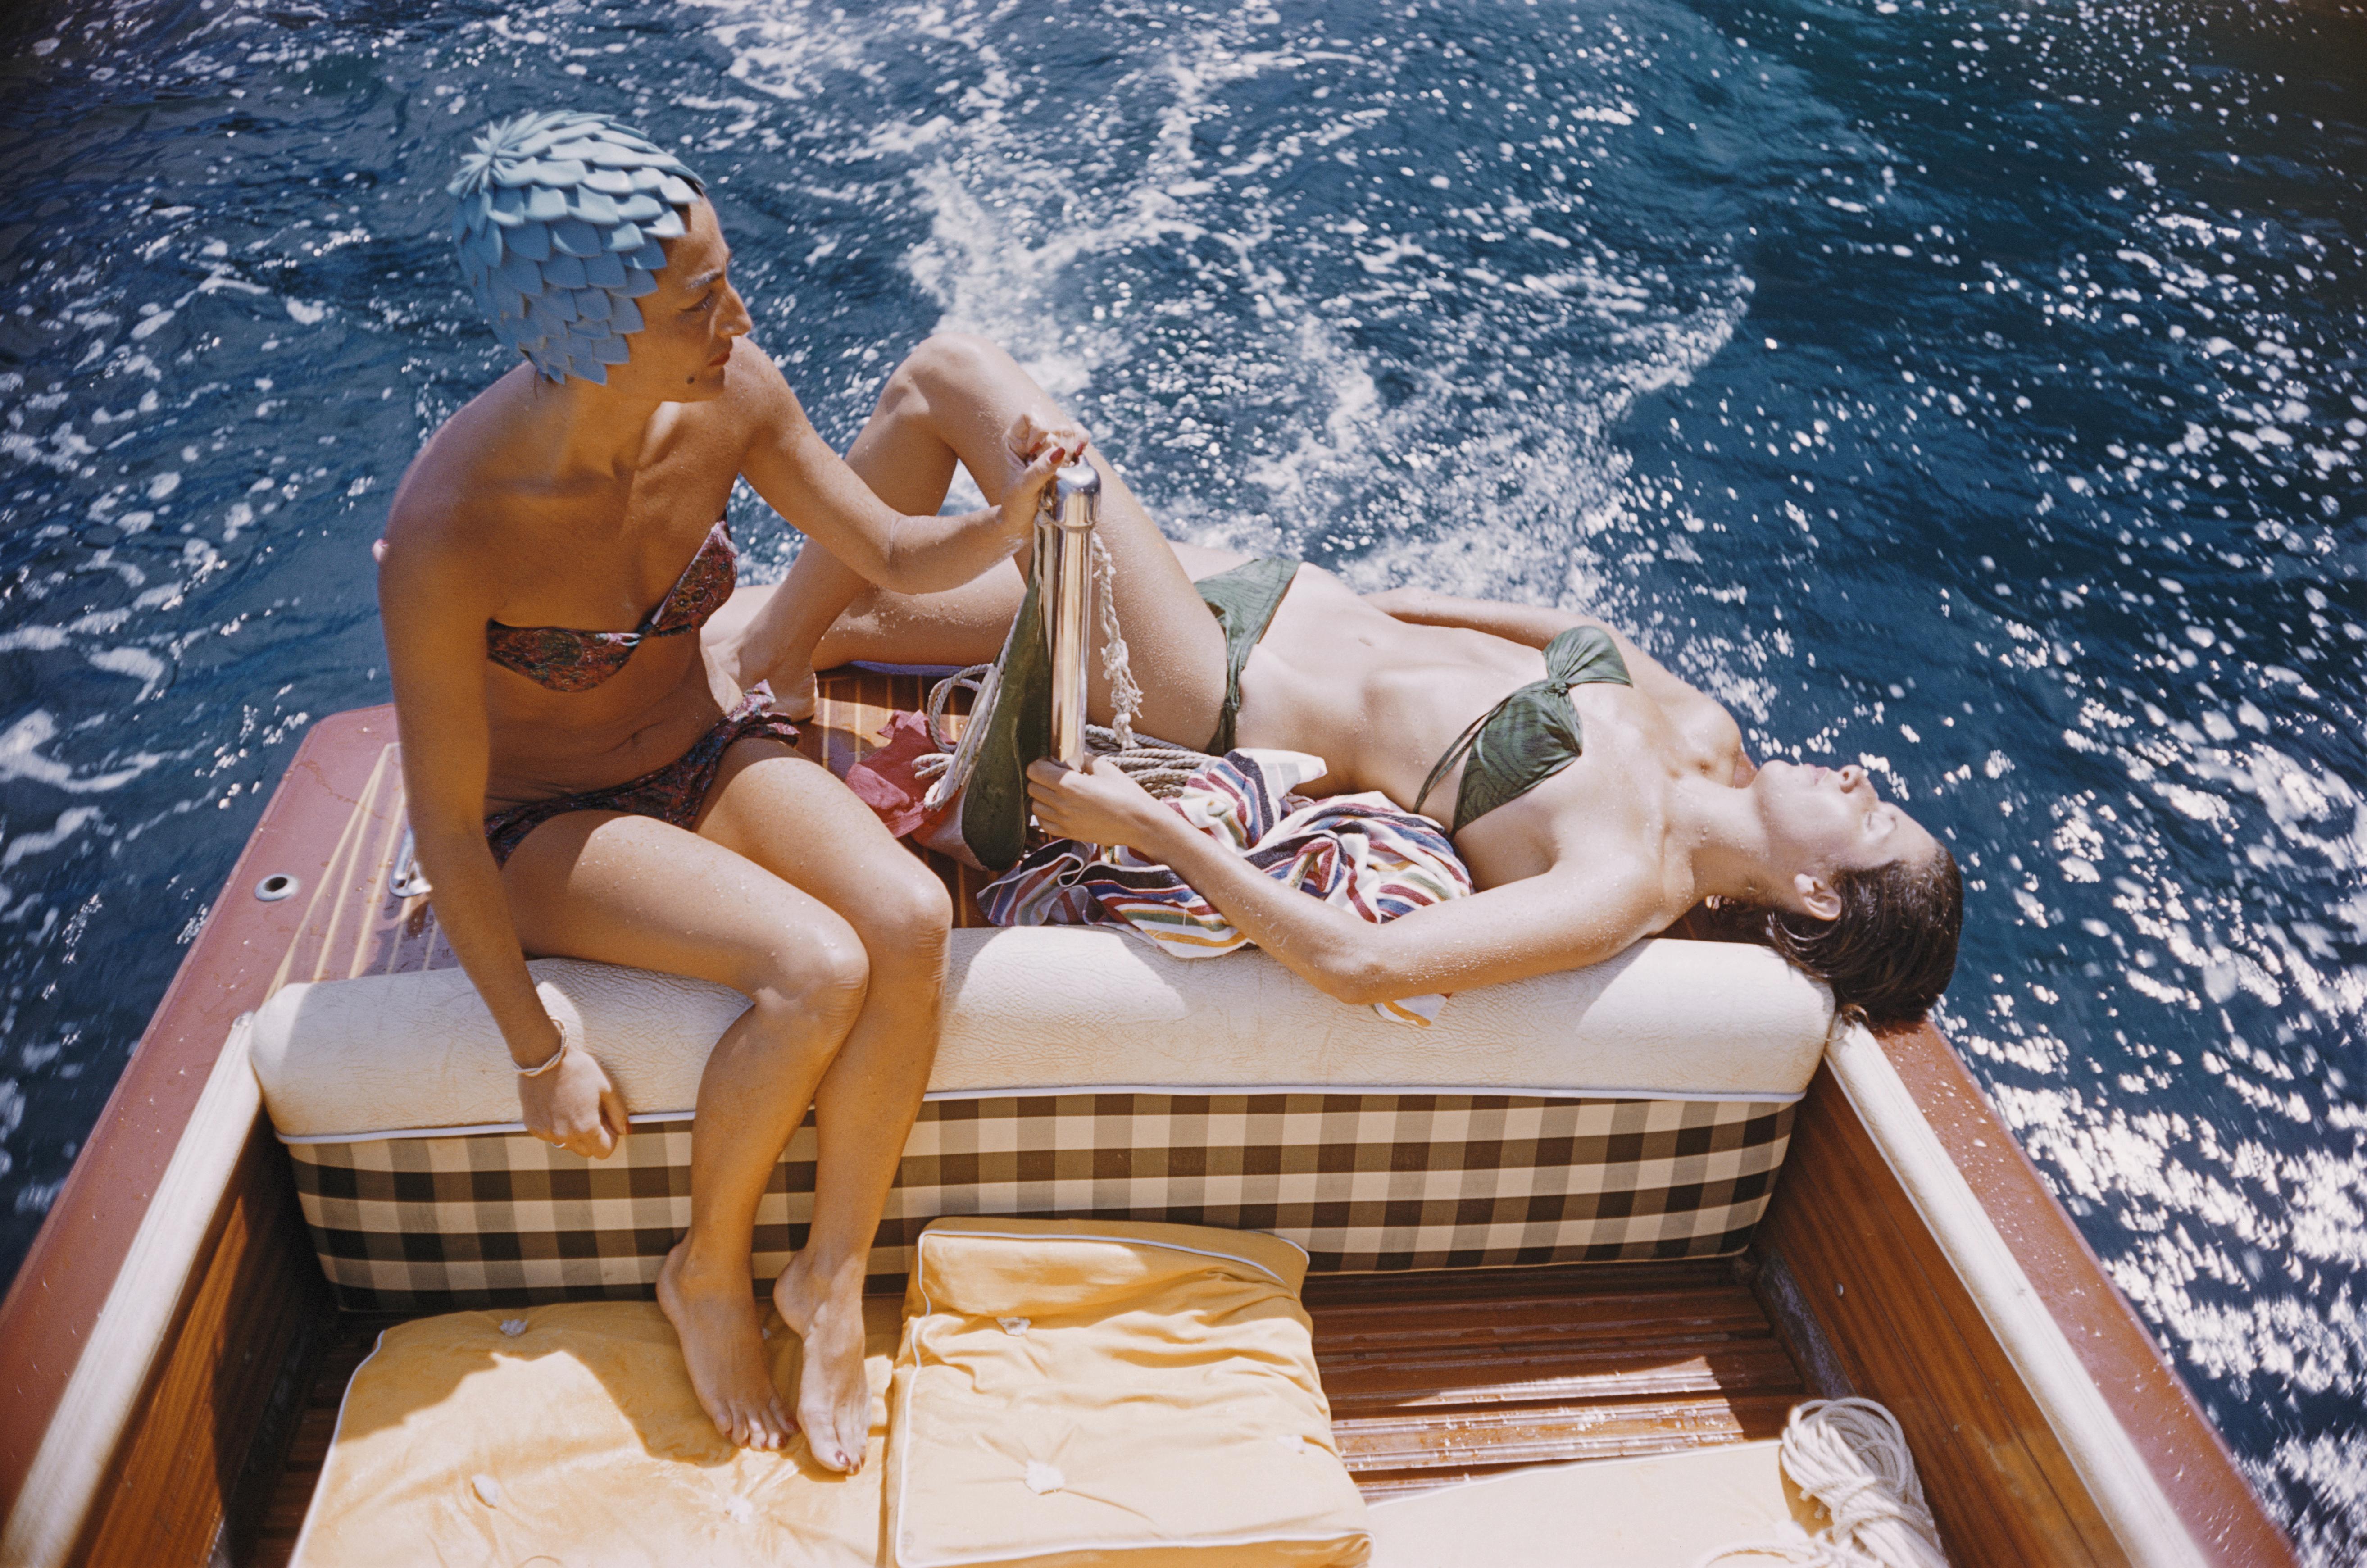 Carla Vuccino, portant un bonnet de bain, et Marina Ravas, prenant un bain de soleil, toutes deux en bikini, assises à l'arrière d'un bateau, au large de l'île de Capri, Italie, 1958.

Slim Aarons
La Dolce Vita : Vuccino et Ravas
Capri,